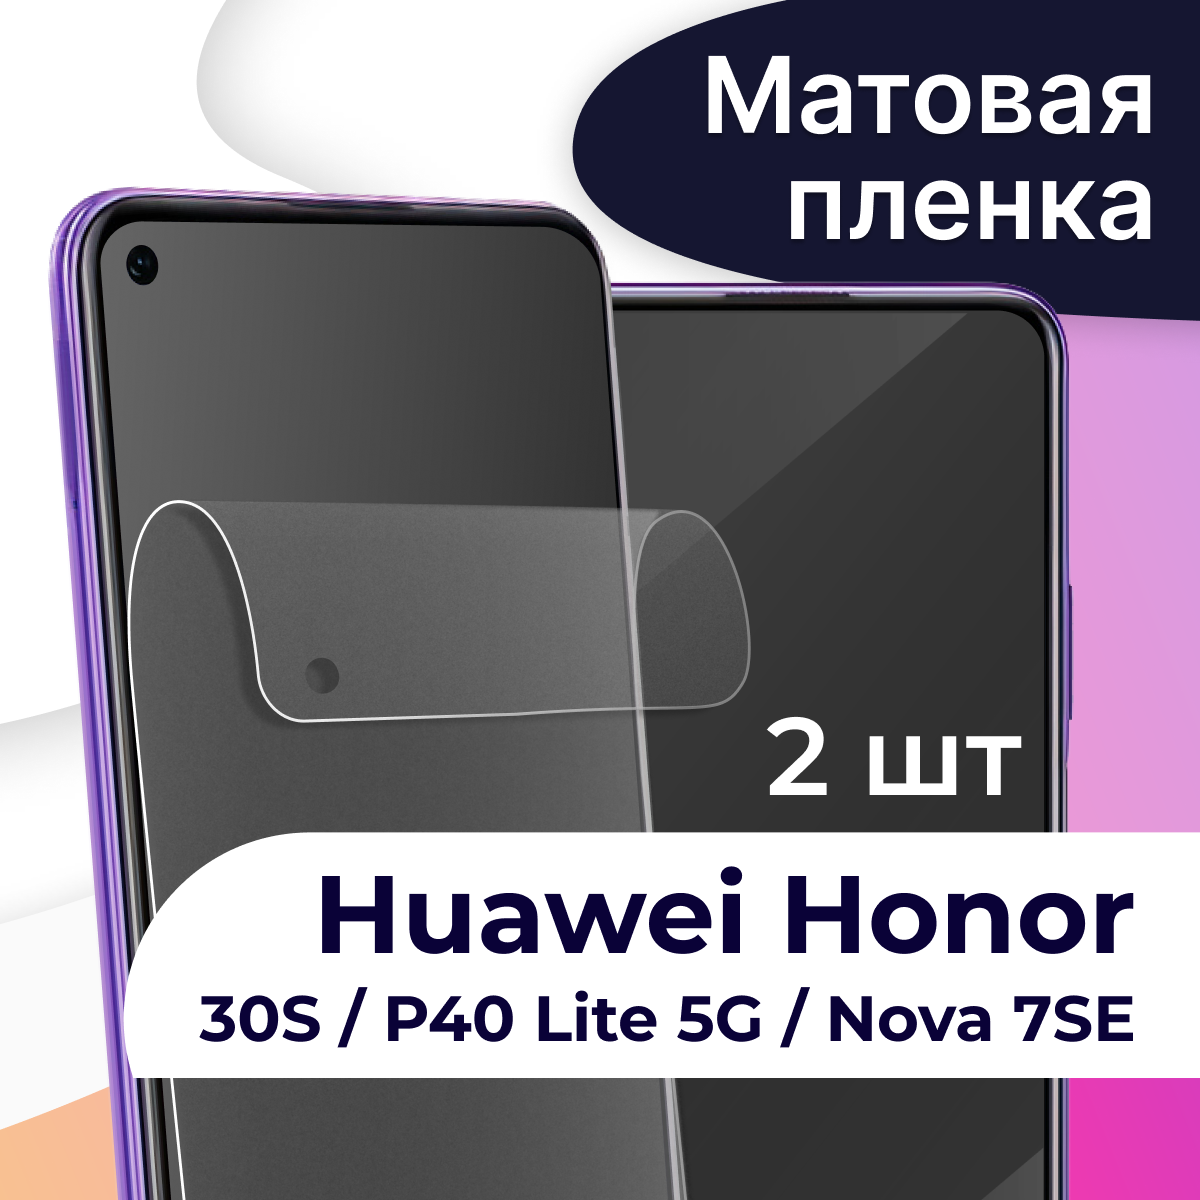 Комплект 2 шт. Матовая пленка на телефон Honor 30S, Huawei P40 Lite 5G и Nova 7 SE / Защитная пленка на Хонор 30С, Хуавей П40 Лайт 5Г и Нова 7 СЕ